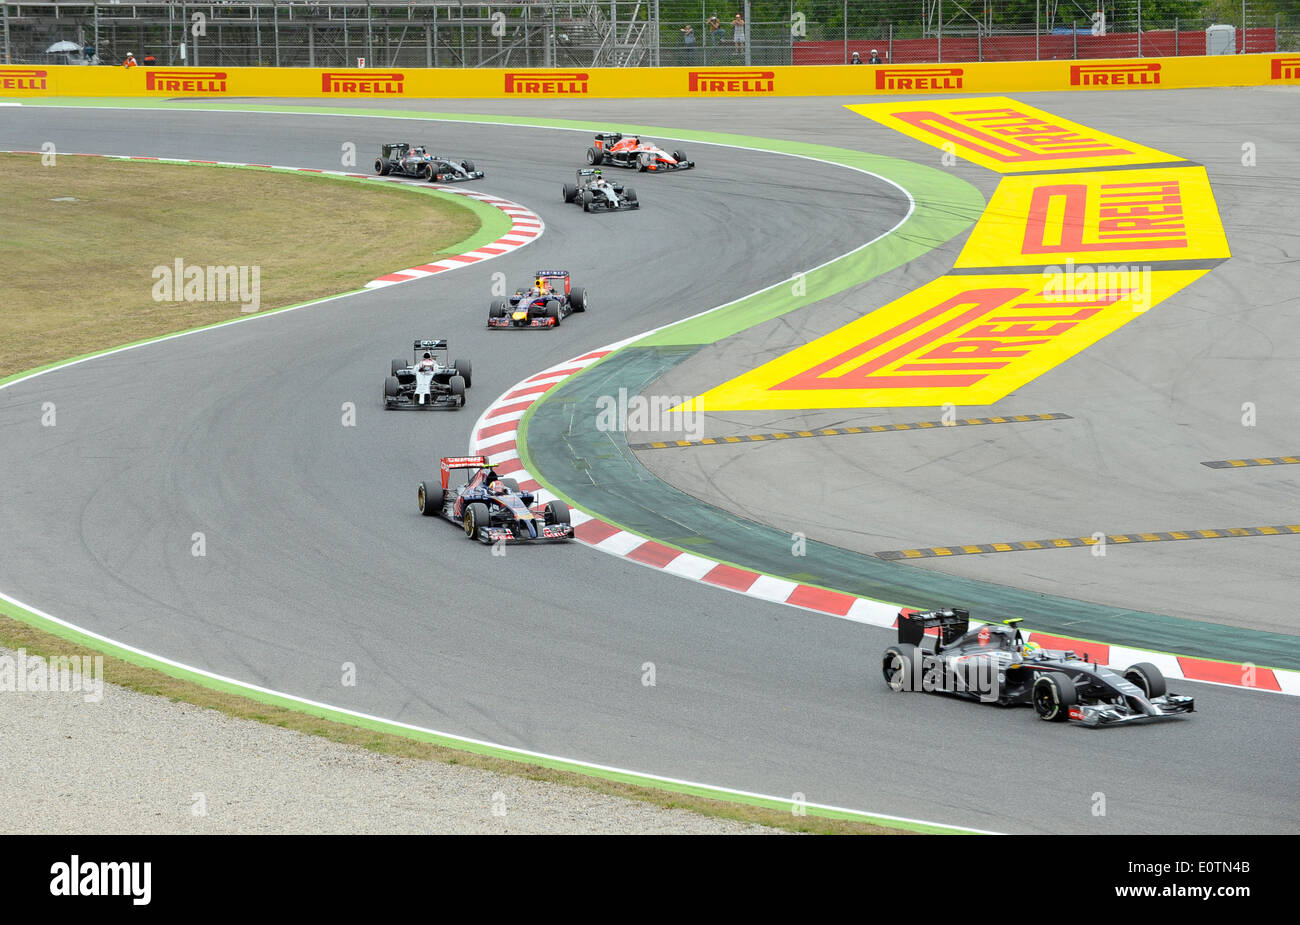 Formel 1 Grand Prix von Spanien 2014---erste Kurve nach dem Start Stockfoto